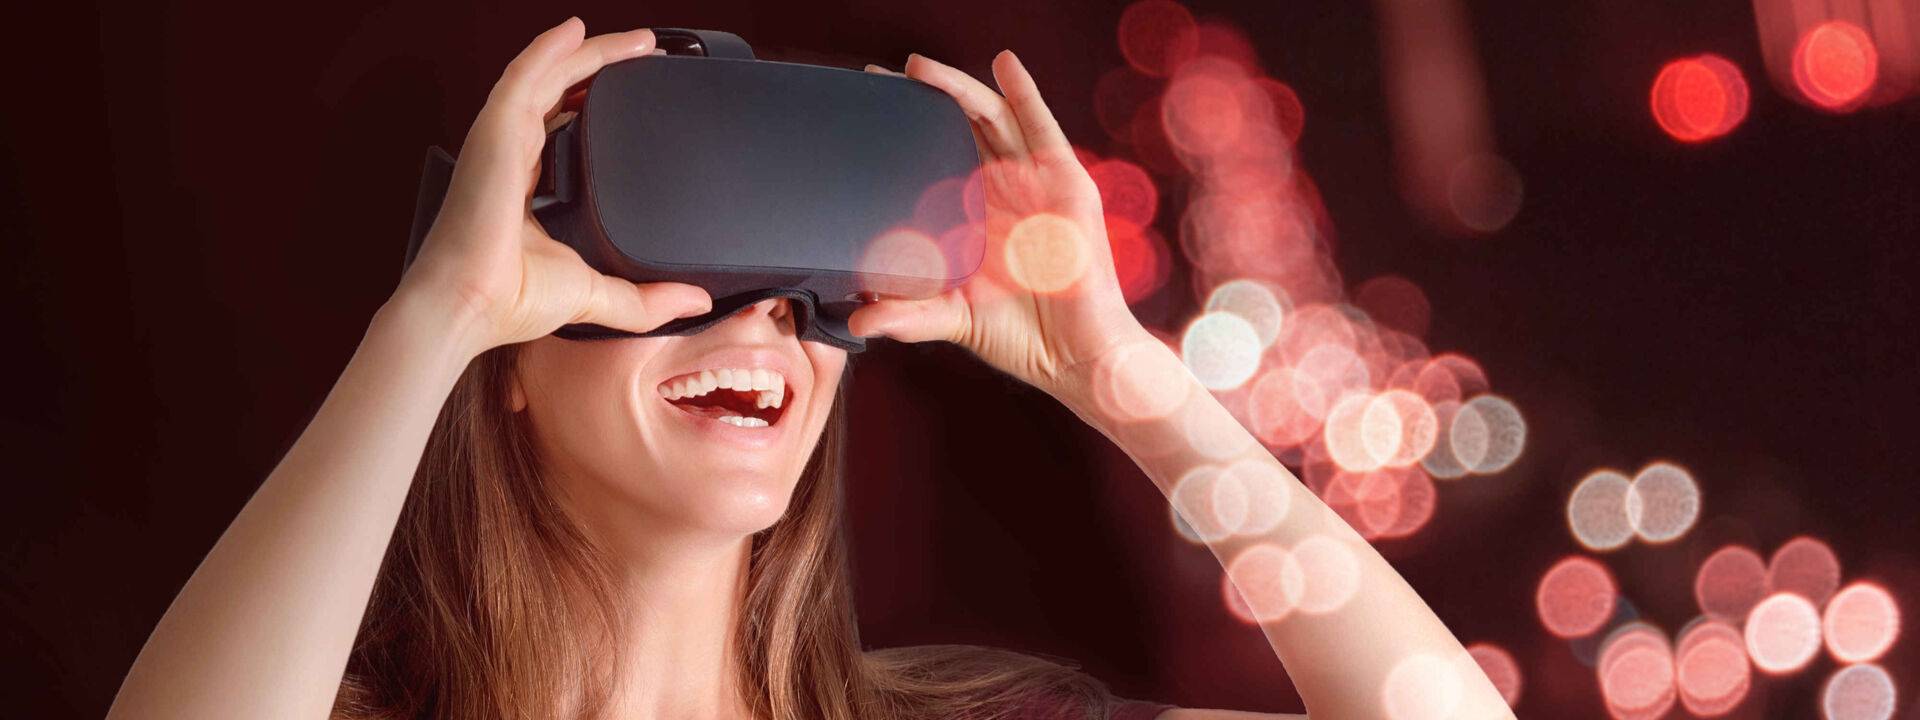 Réalité virtuelle casque femme